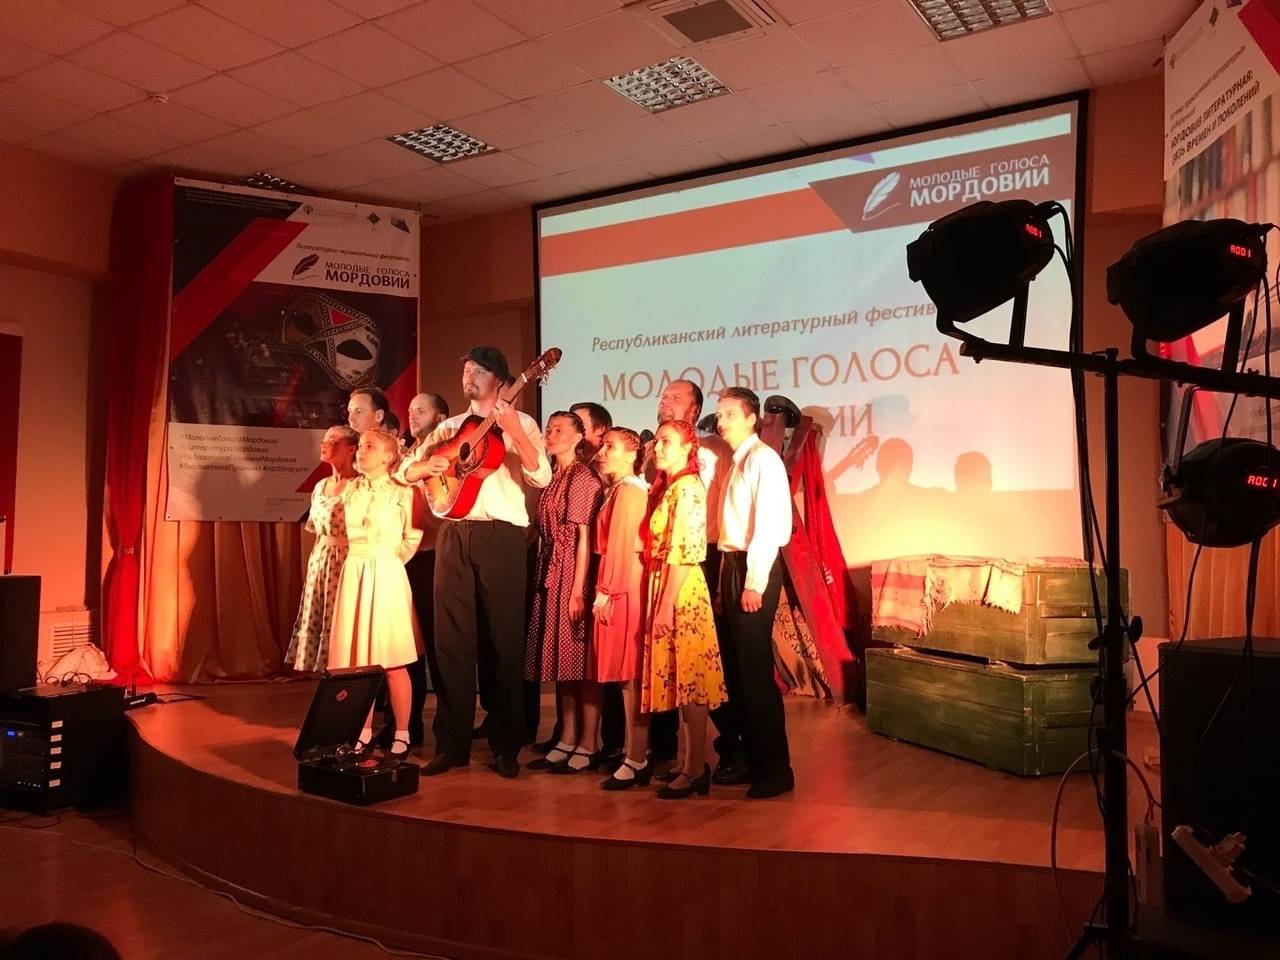 В Саранске «Молодые голоса Мордовии» прозвучали на мокшанском, эрзянском и русском языках!